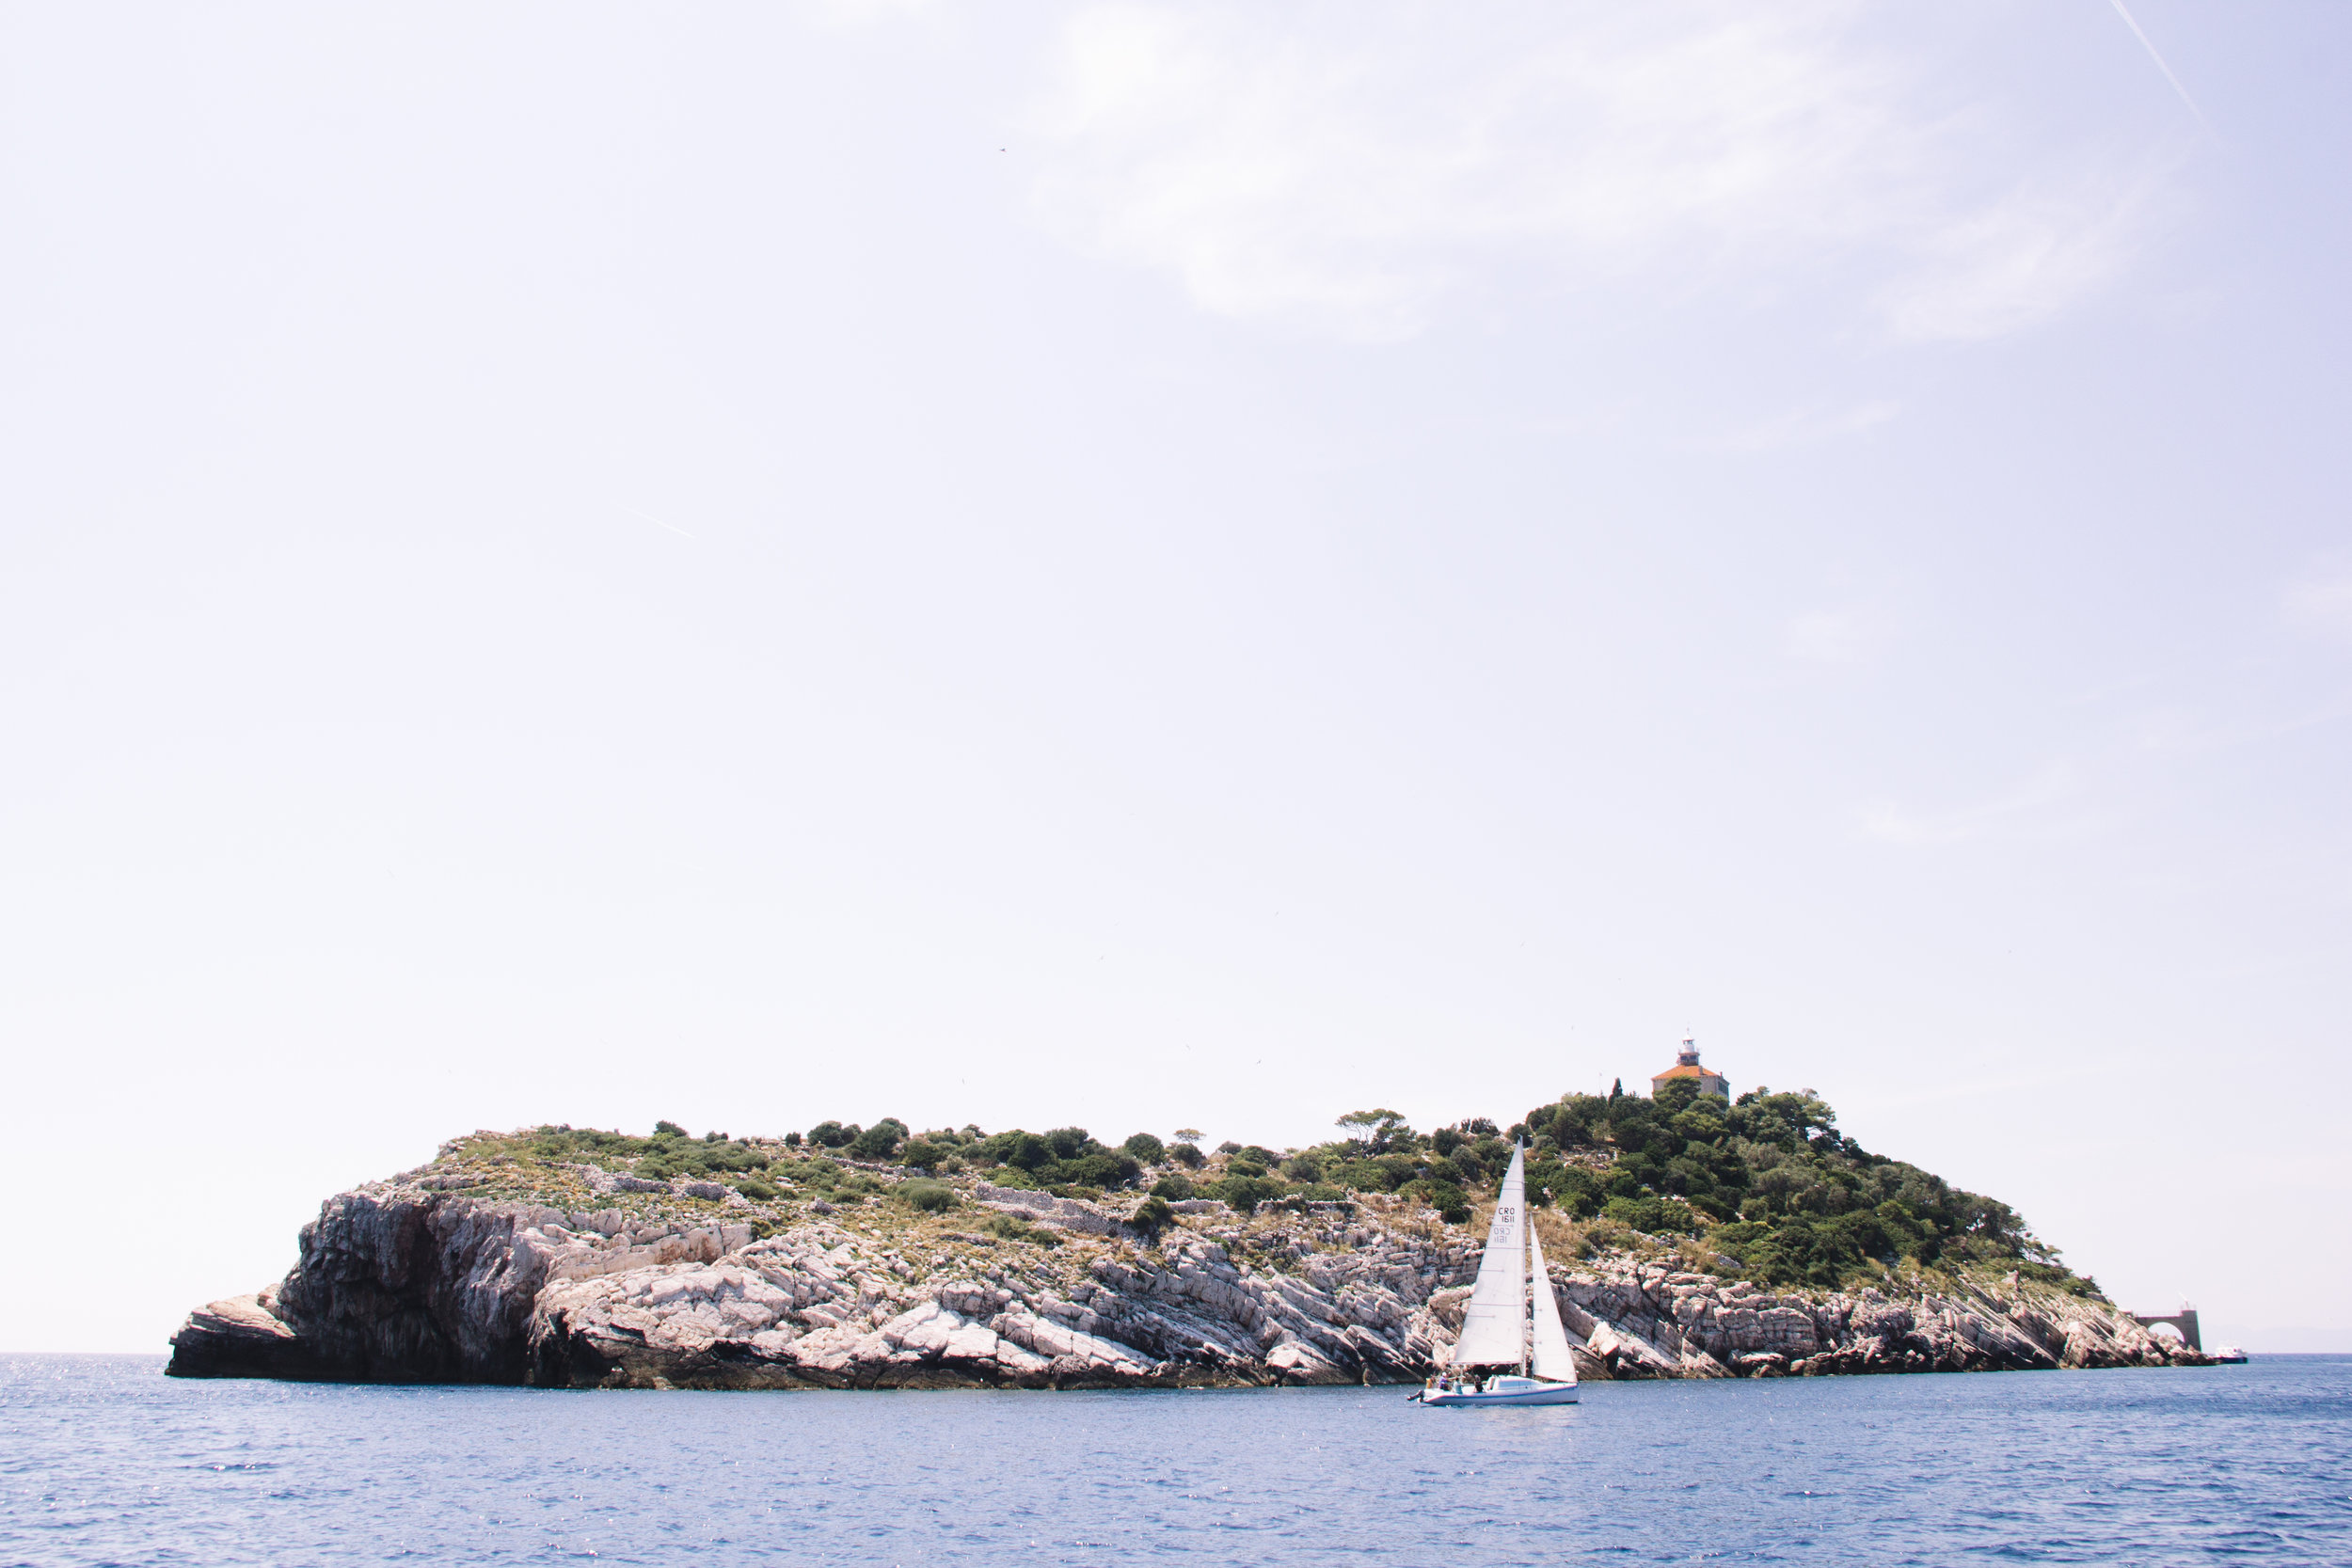 Croatian sailing